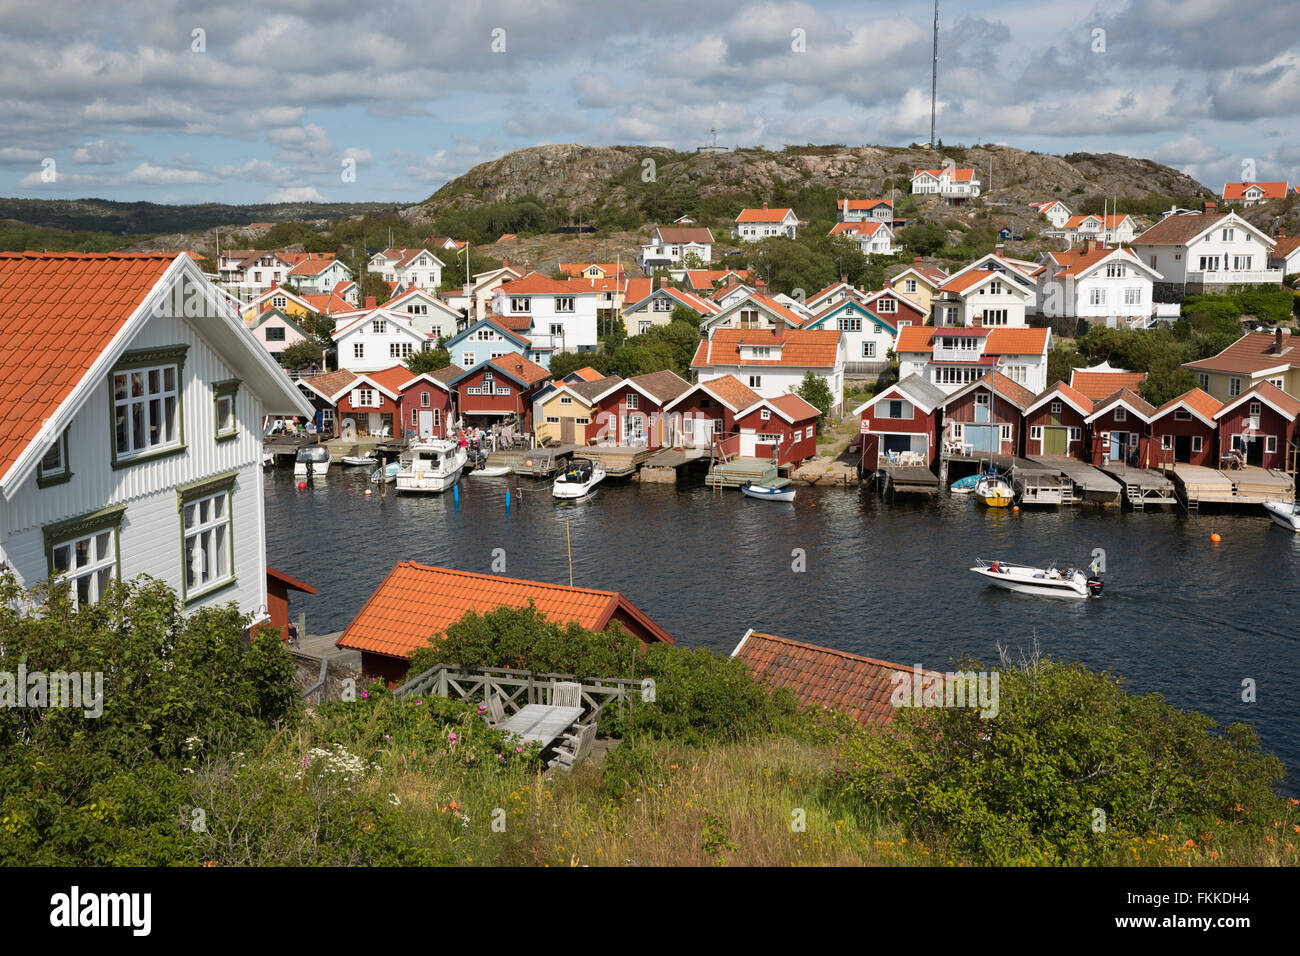 Tradizionale rosso falu case di pescatori, Hälleviksstrand, Orust, Bohuslän, sulla costa sud-ovest della Svezia, Svezia, Scandinavia, Europa Foto Stock